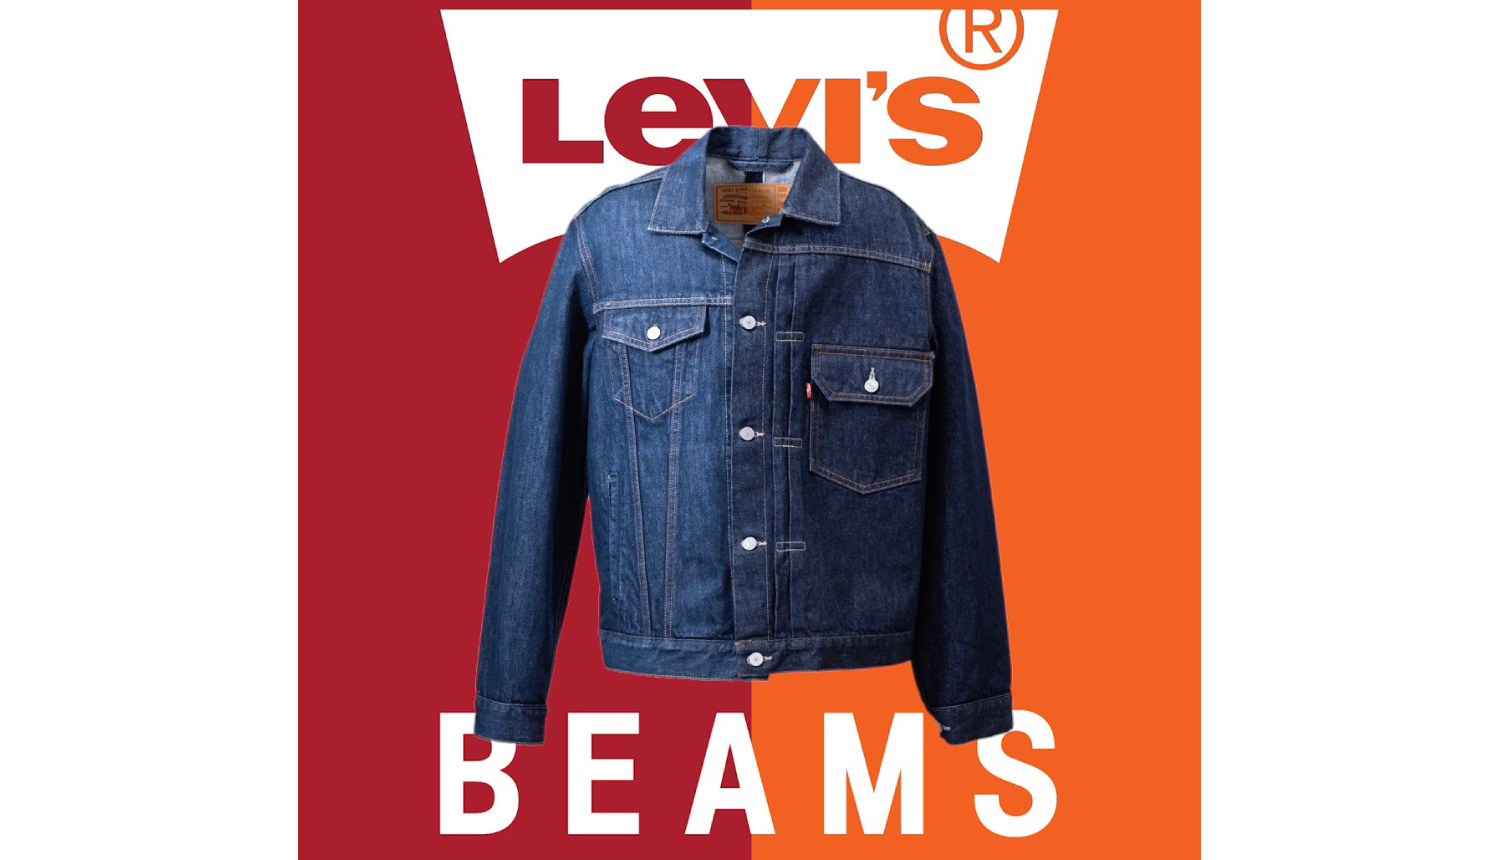 リーバイス-ビームス-LEVI’s-BEAMS-衣服